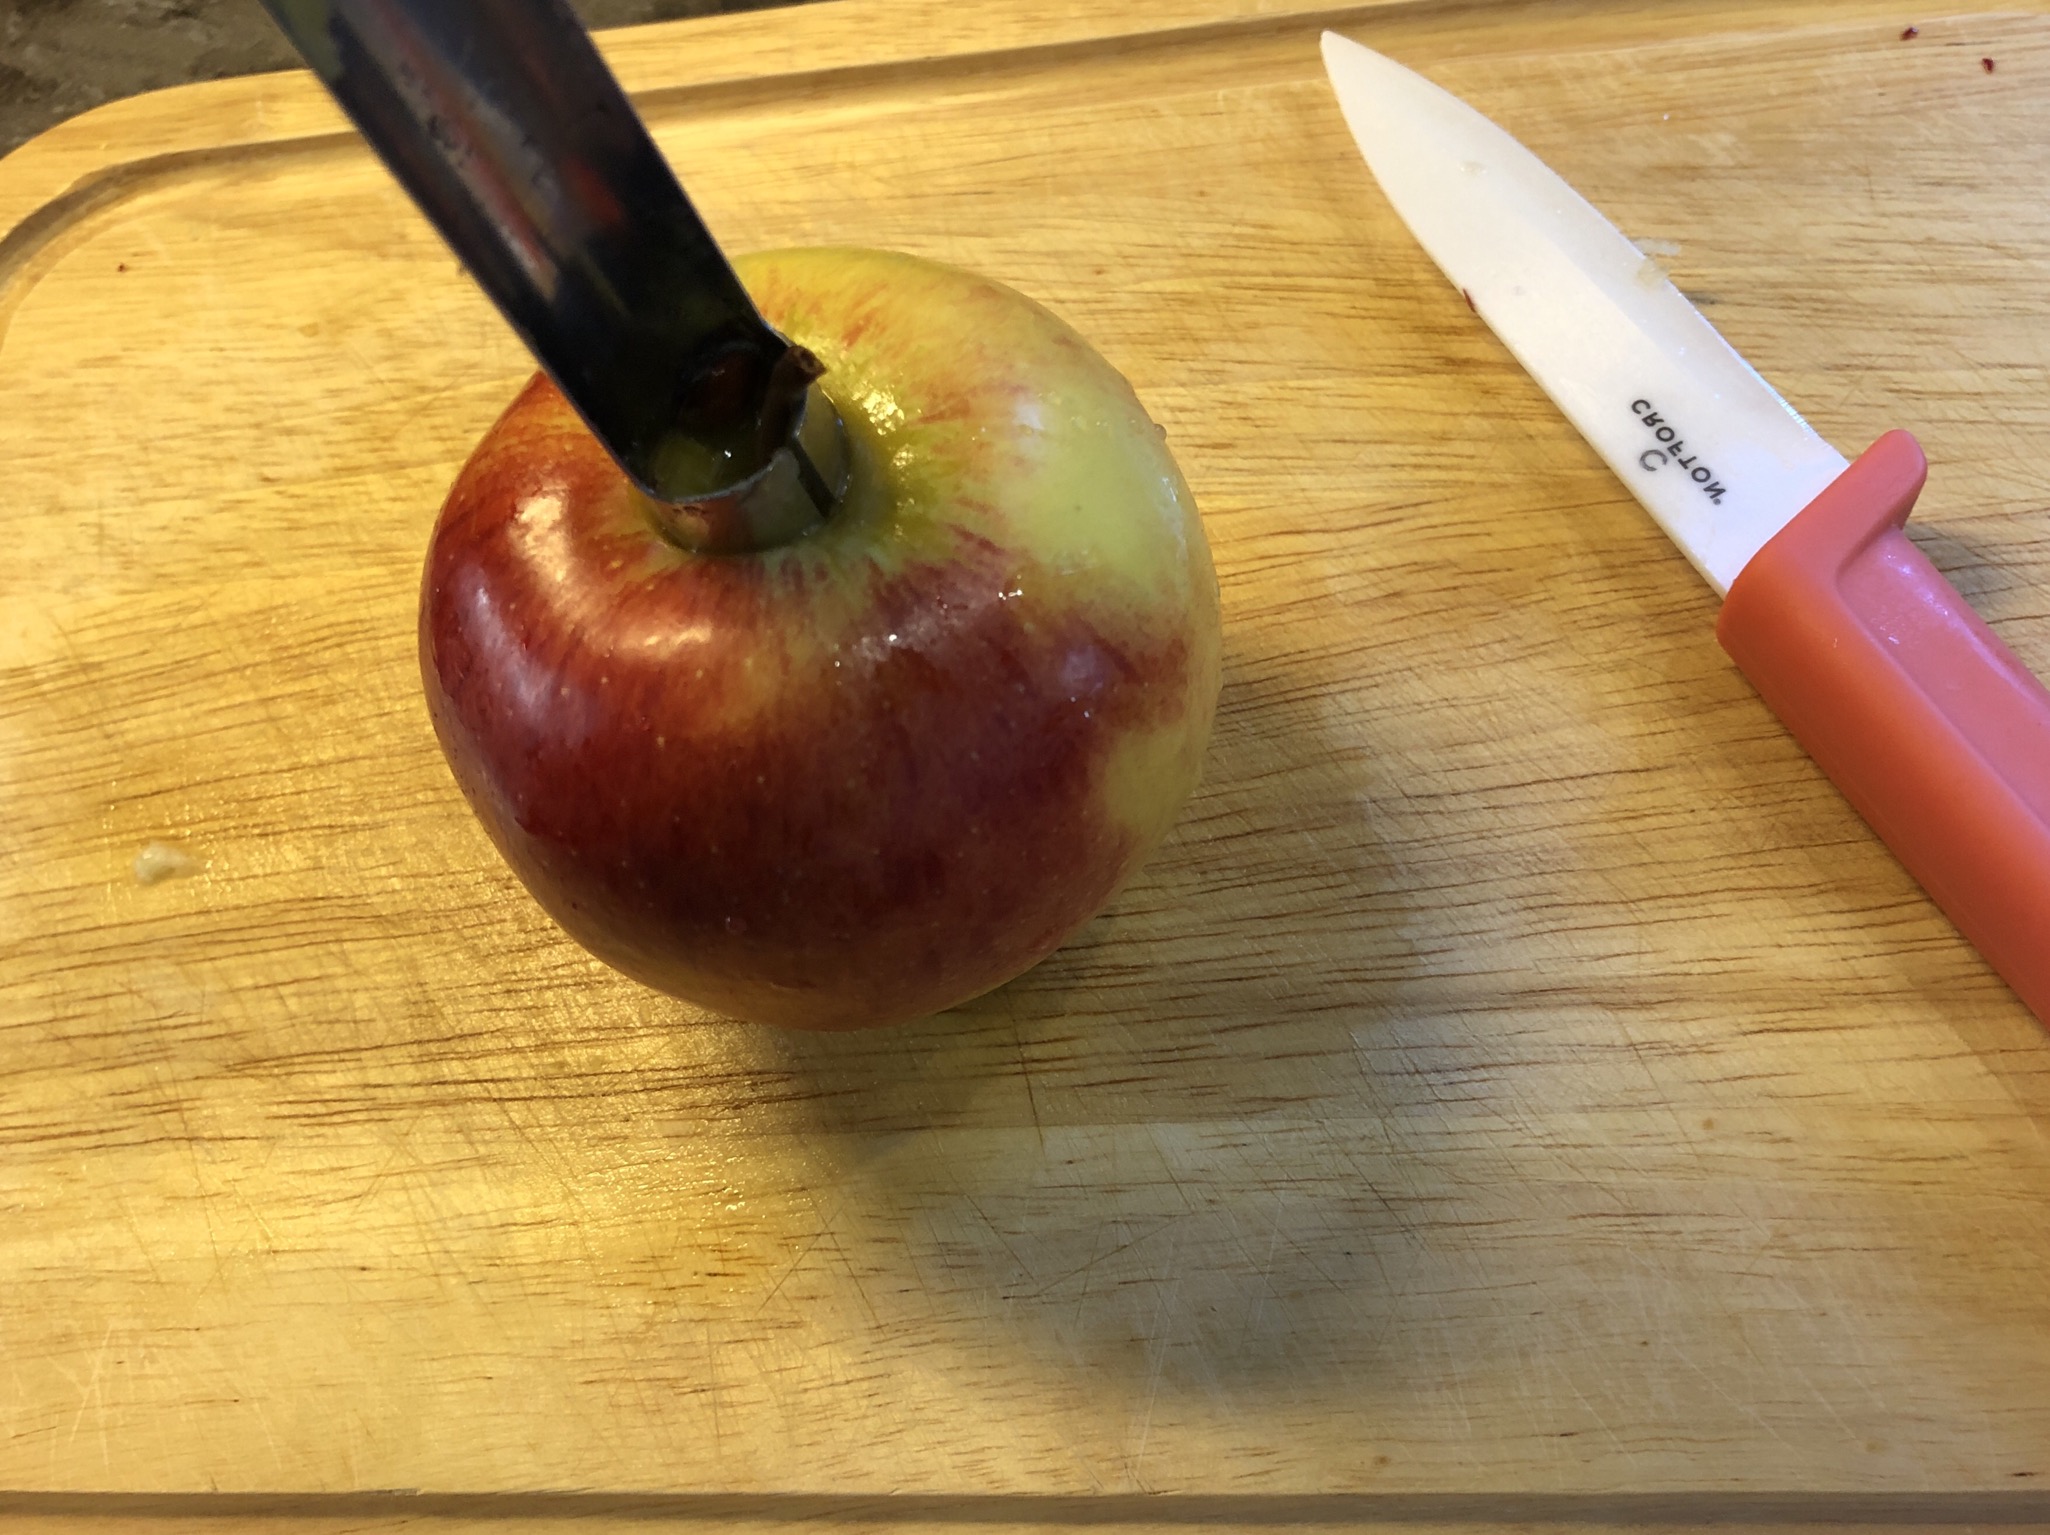 Bild zum Schritt 1 für die Kinder-Beschäftigung: 'Als erstes wird der Apfel entkernt. Dazu mit dem Apfel-Entkerner...'